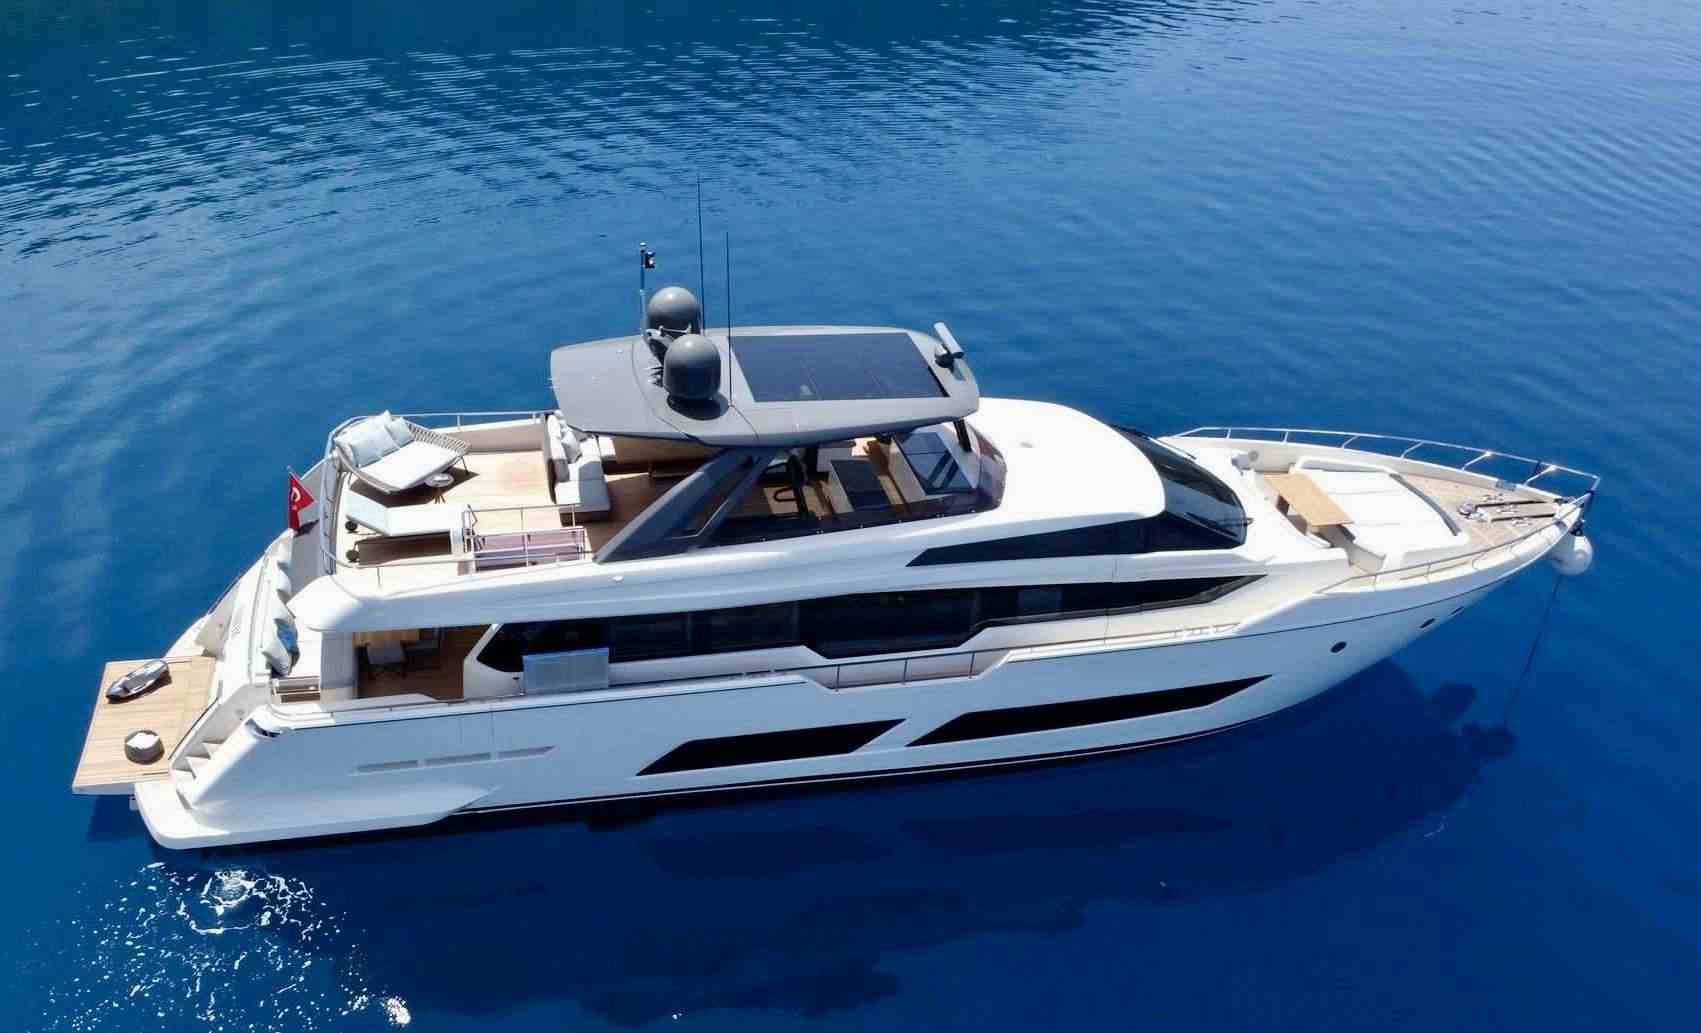 SHERO - Yacht Charter Keramoti & Boat hire in Greece & Turkey 1